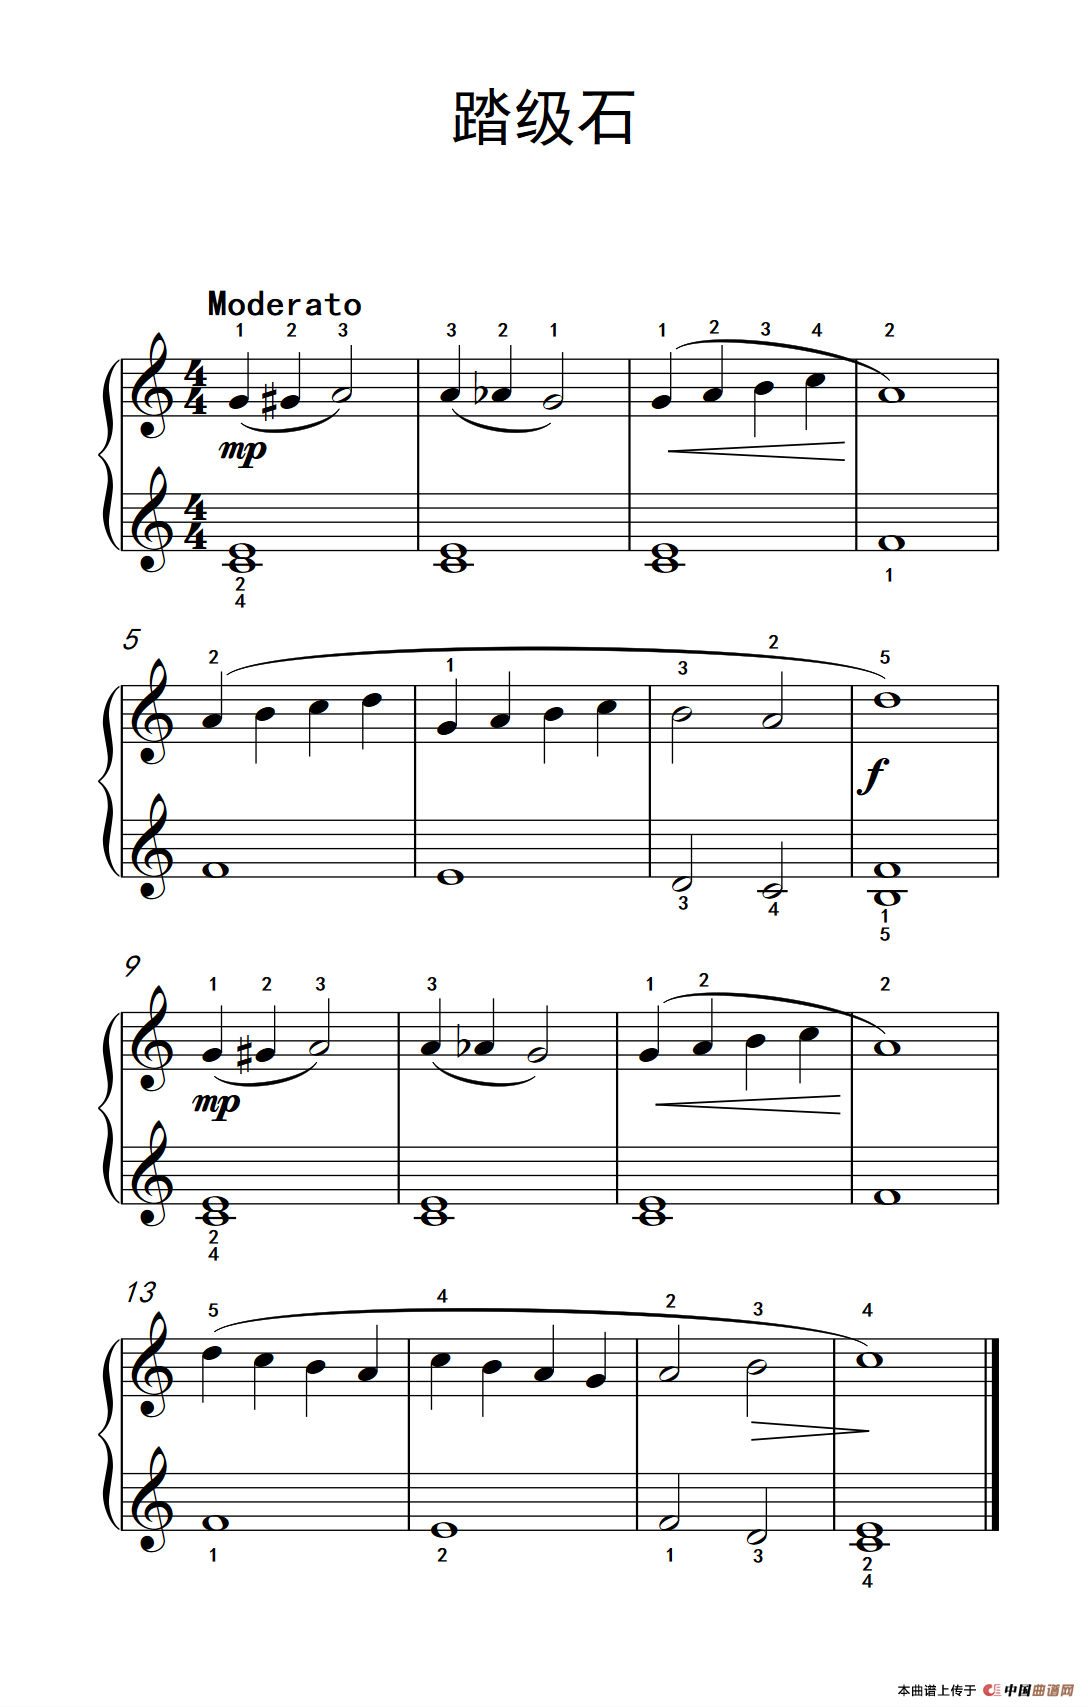 《踏级石》钢琴曲谱图分享